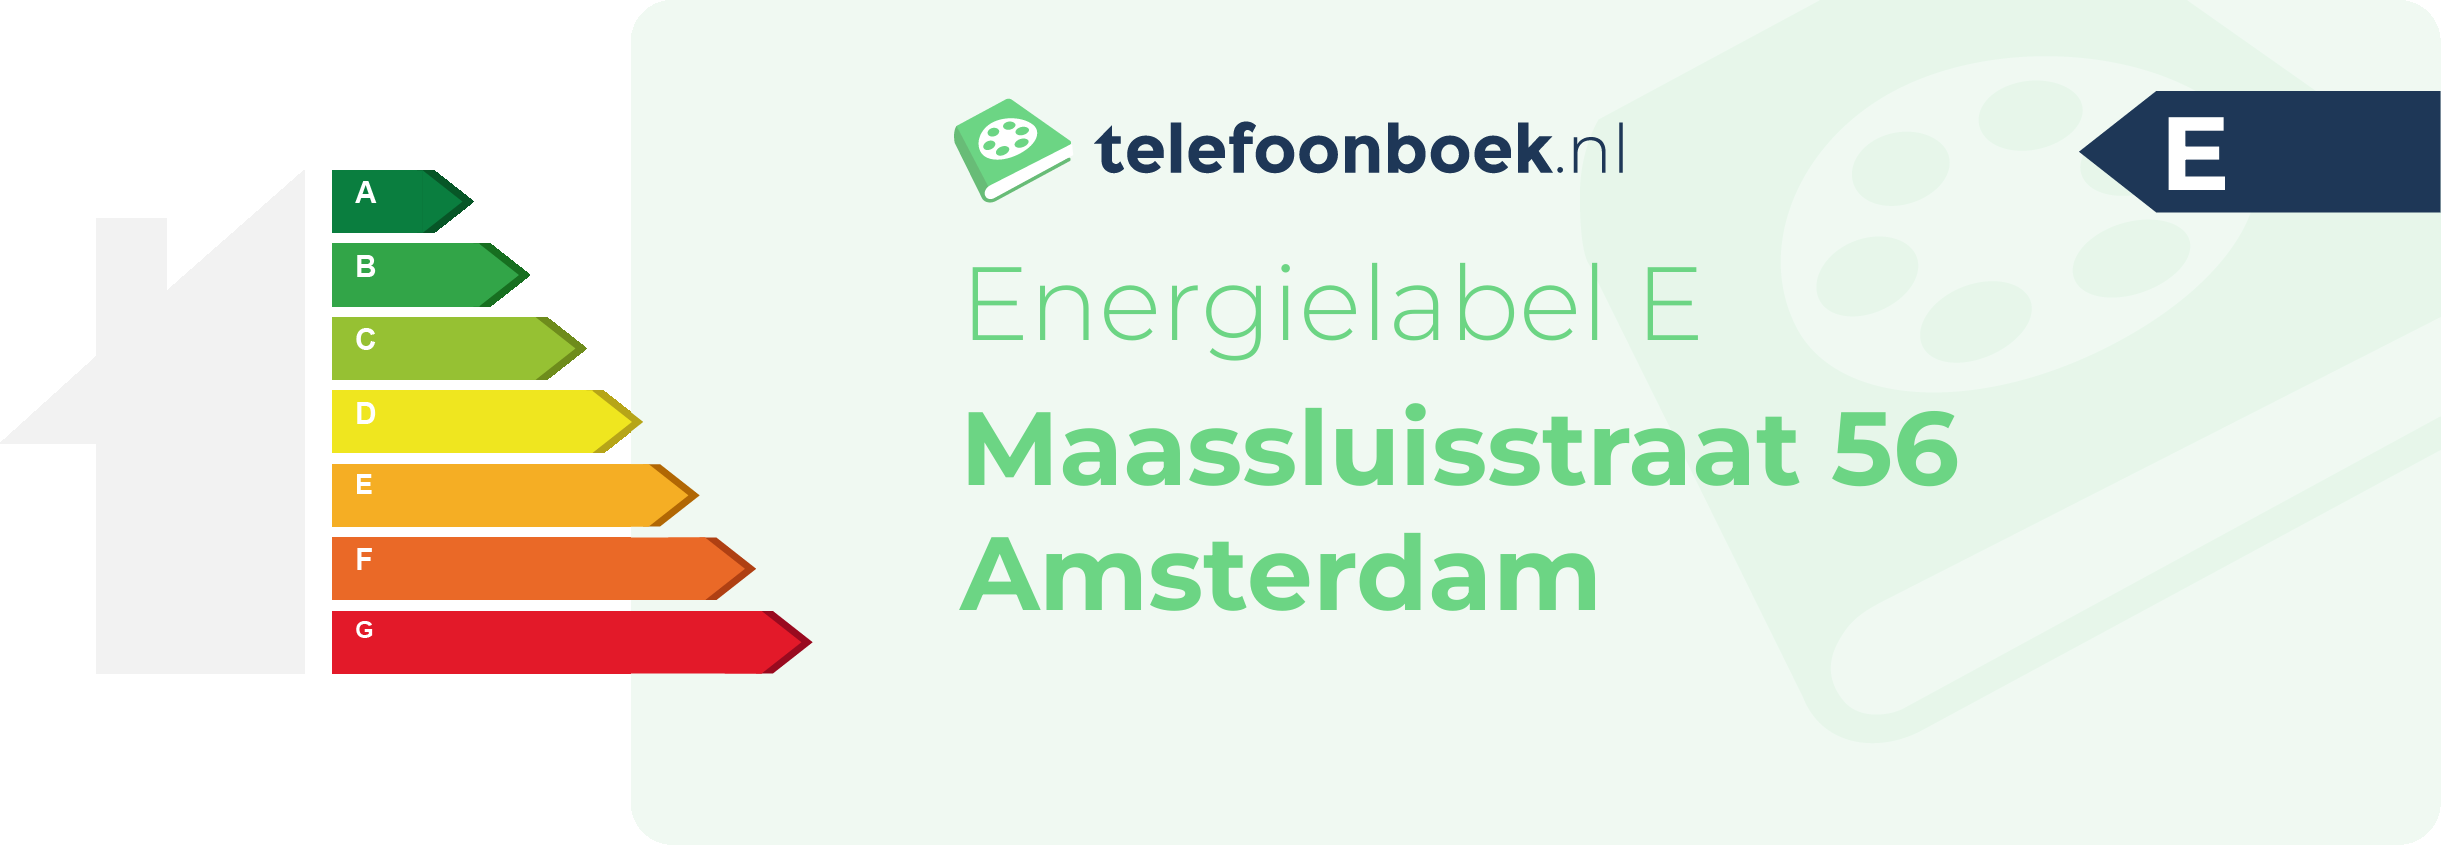 Energielabel Maassluisstraat 56 Amsterdam